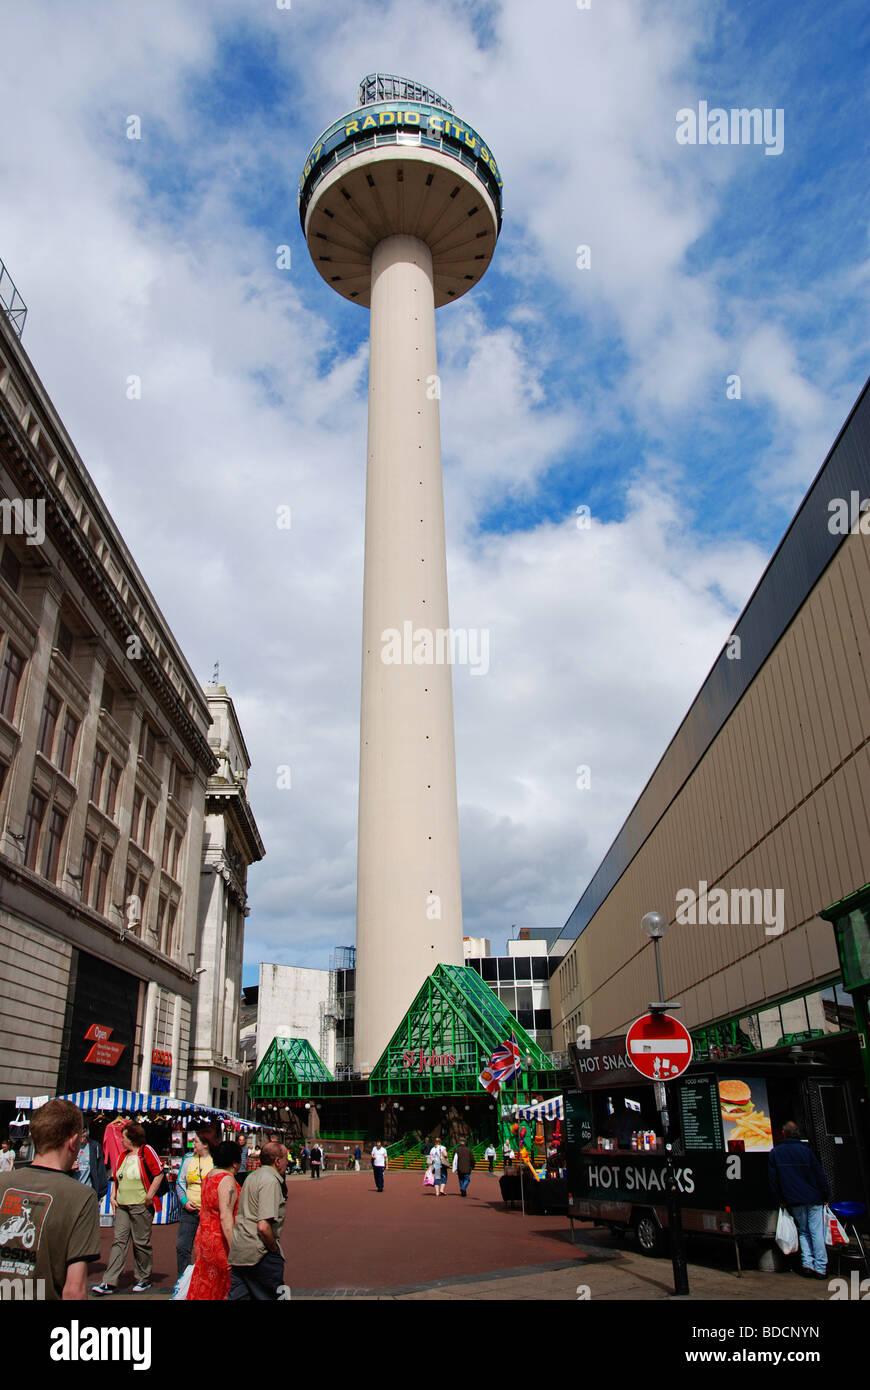 La ' radio city ' torre a st.johns mercato in liverpool, Regno Unito Foto Stock